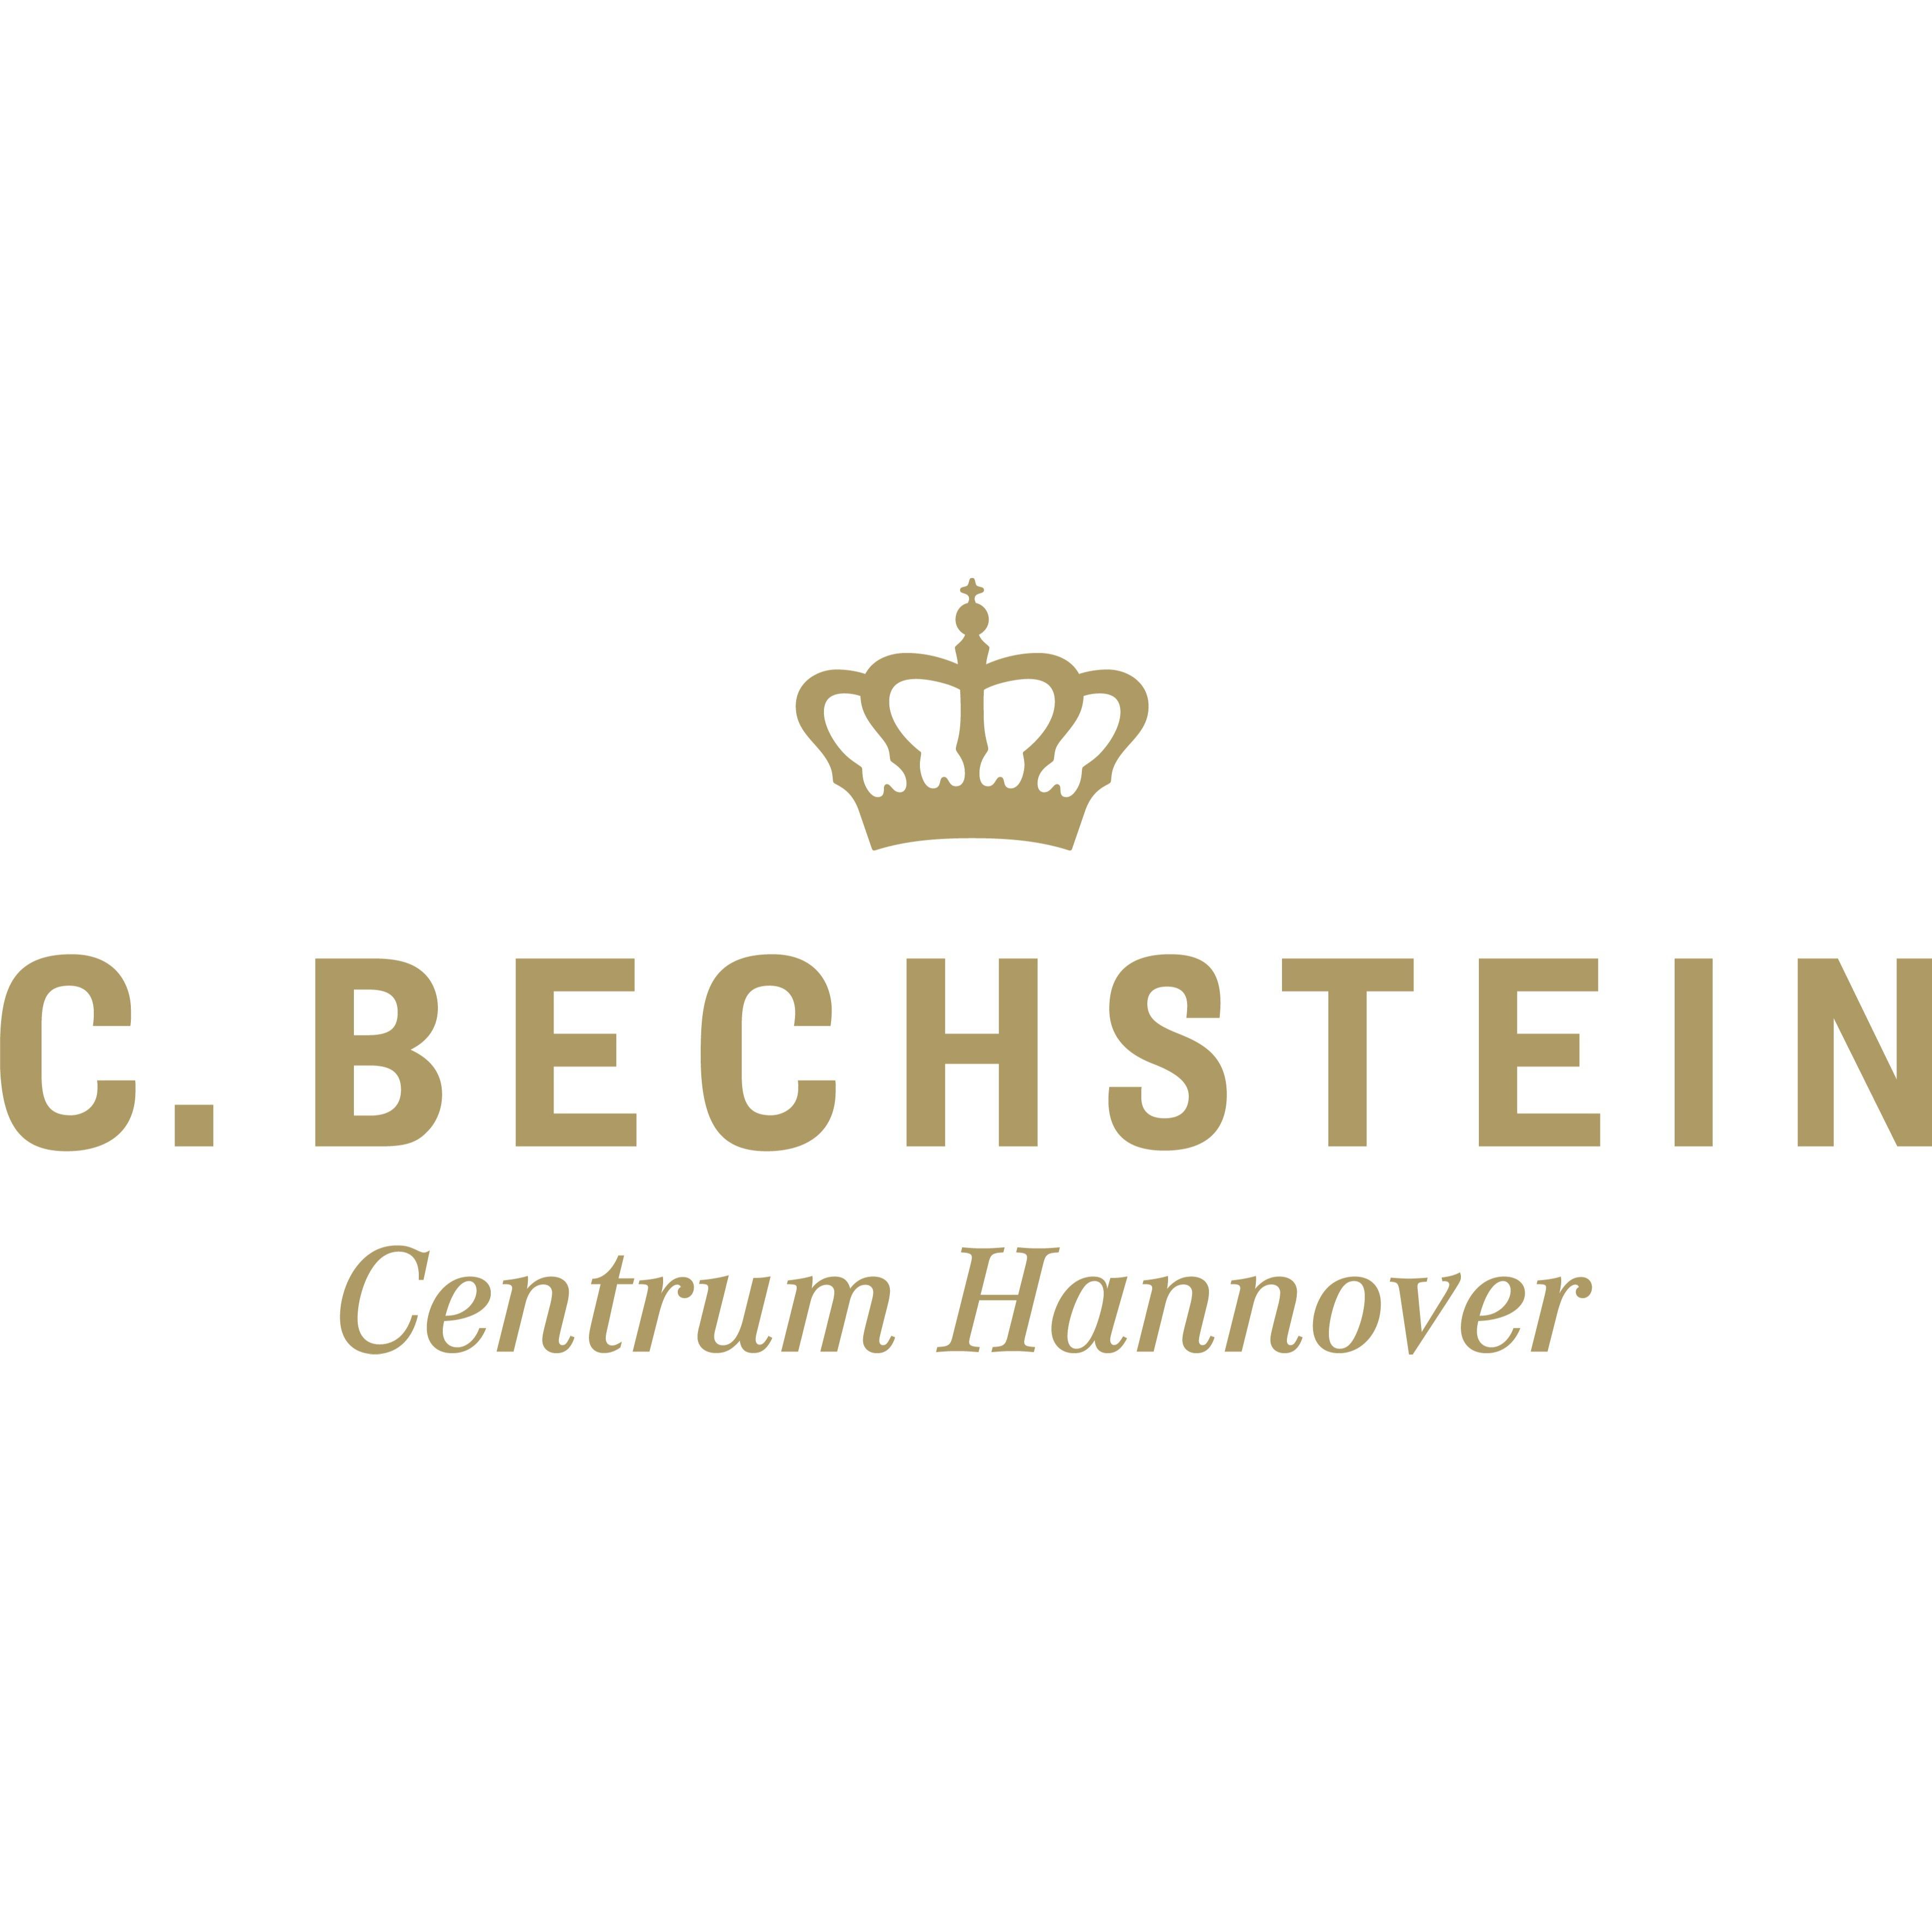 Logo Das C. Bechstein Centrum Hannover - Bei uns finden Sie eine große Auswahl an Klavieren, Flügeln und Digitalpianos unserer verschiedenen Marken sowie hochwertige Gebrauchtinstrumente - geeignet für jeden Anspruch, jeden Geschmack und für jede Preislage.